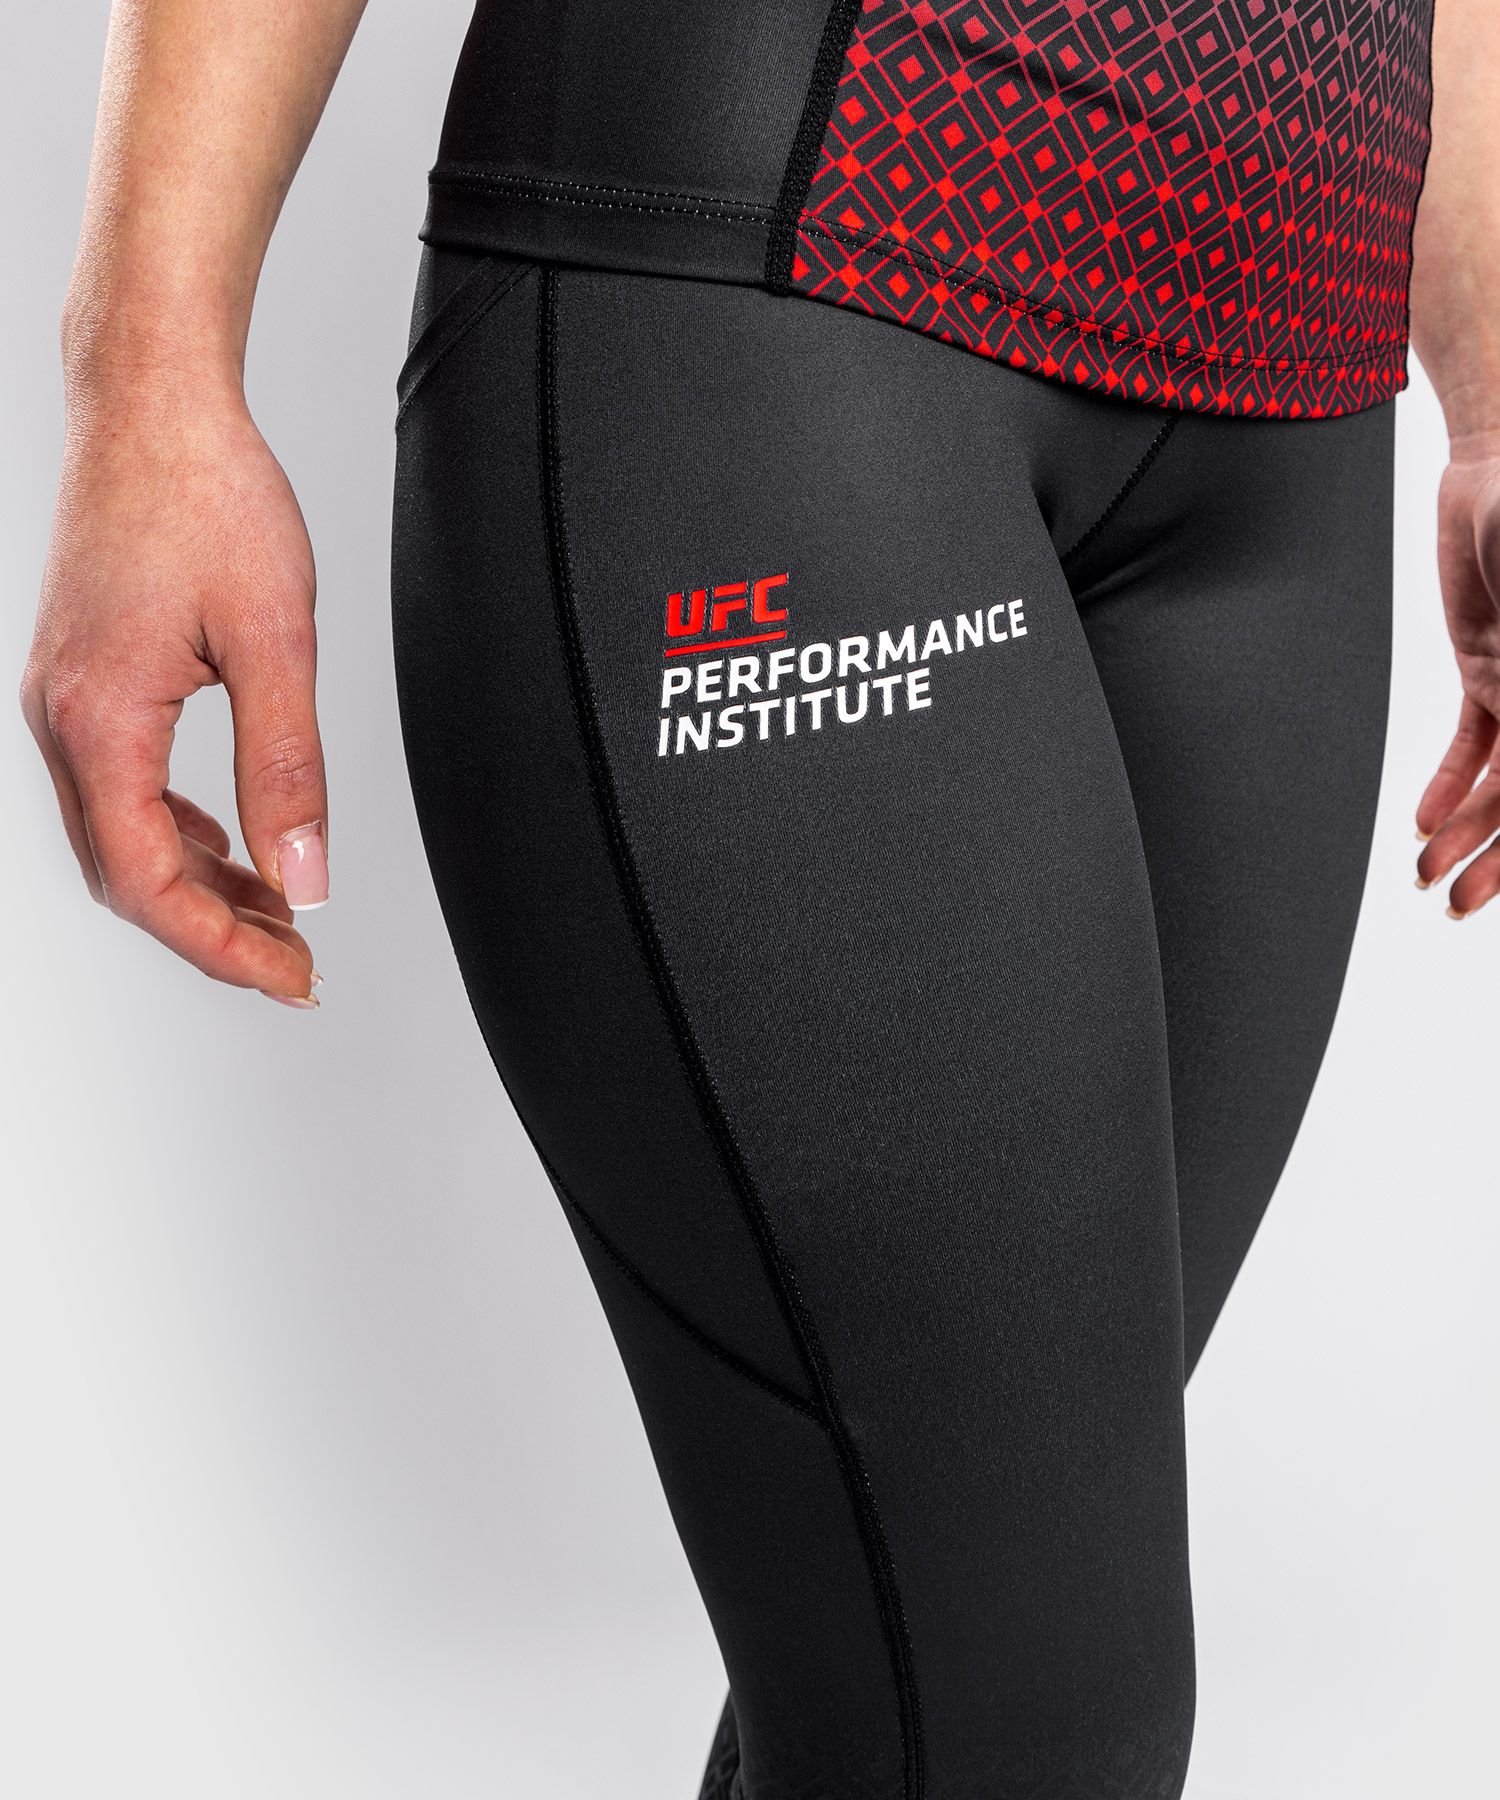 UFC Venum Performance Institute Legging - Black/Red